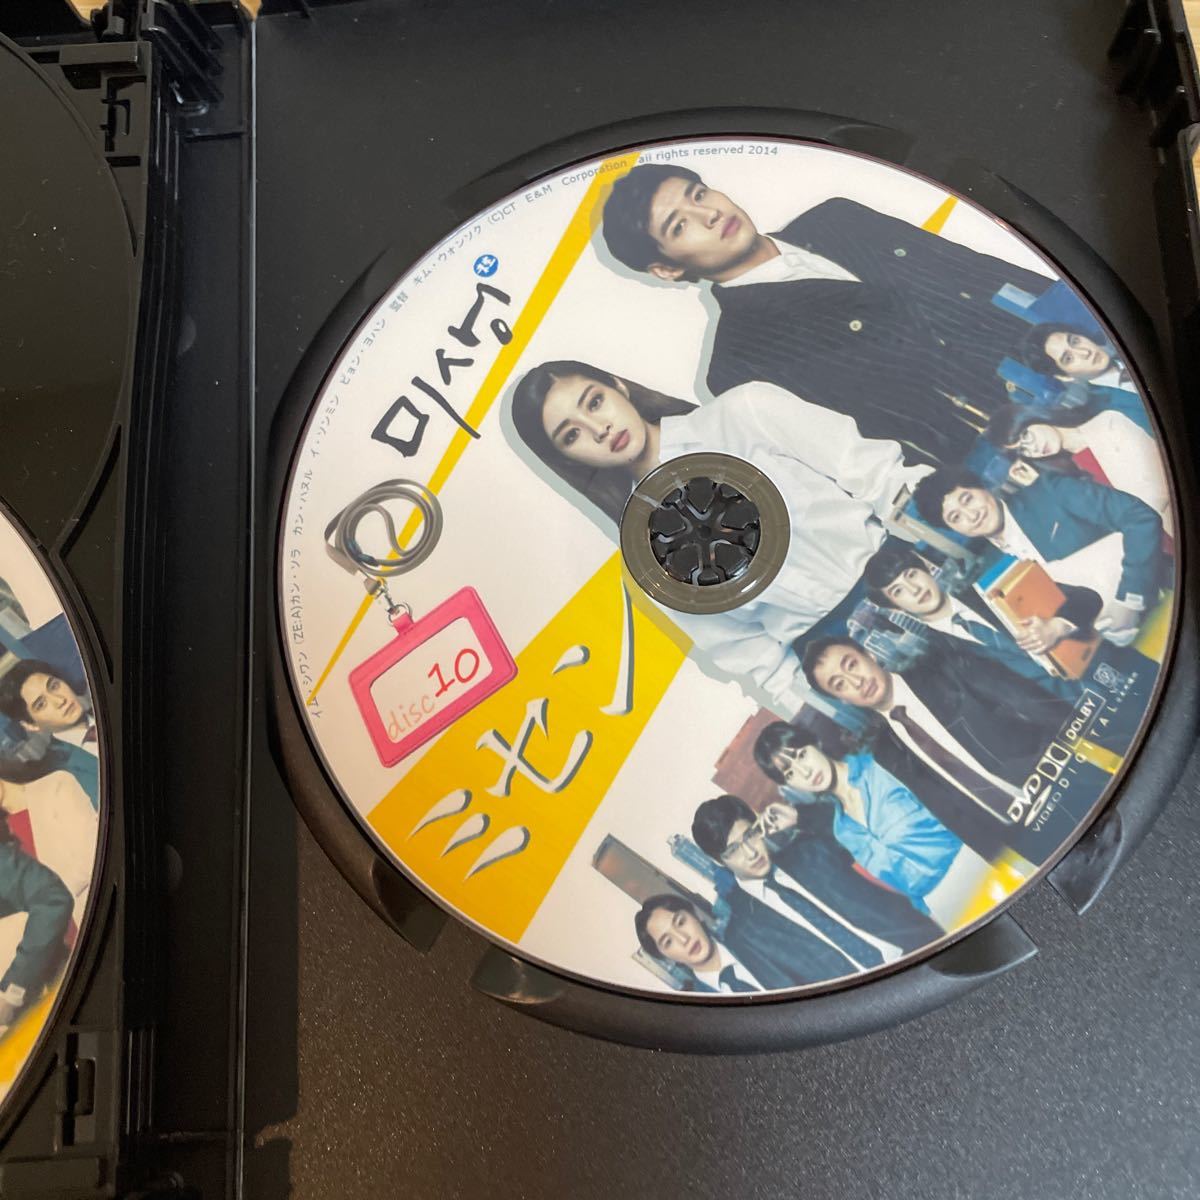 韓国ドラマミセン全話 DVD BOX